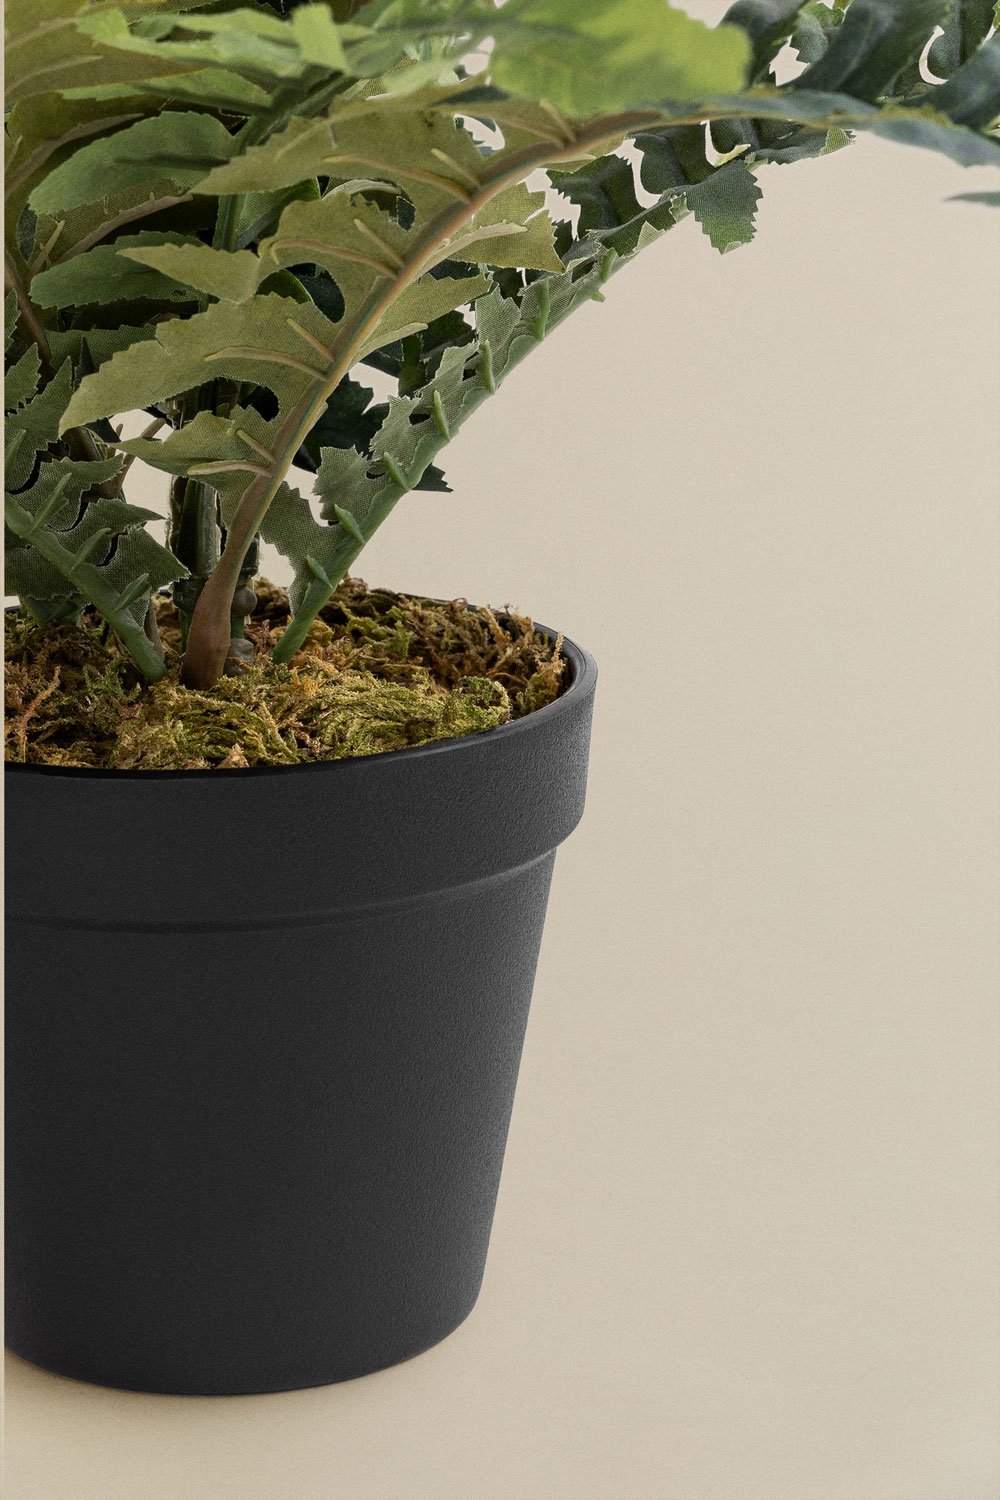 Plante Artificielle Décorative Monstera 35 cm - SKLUM